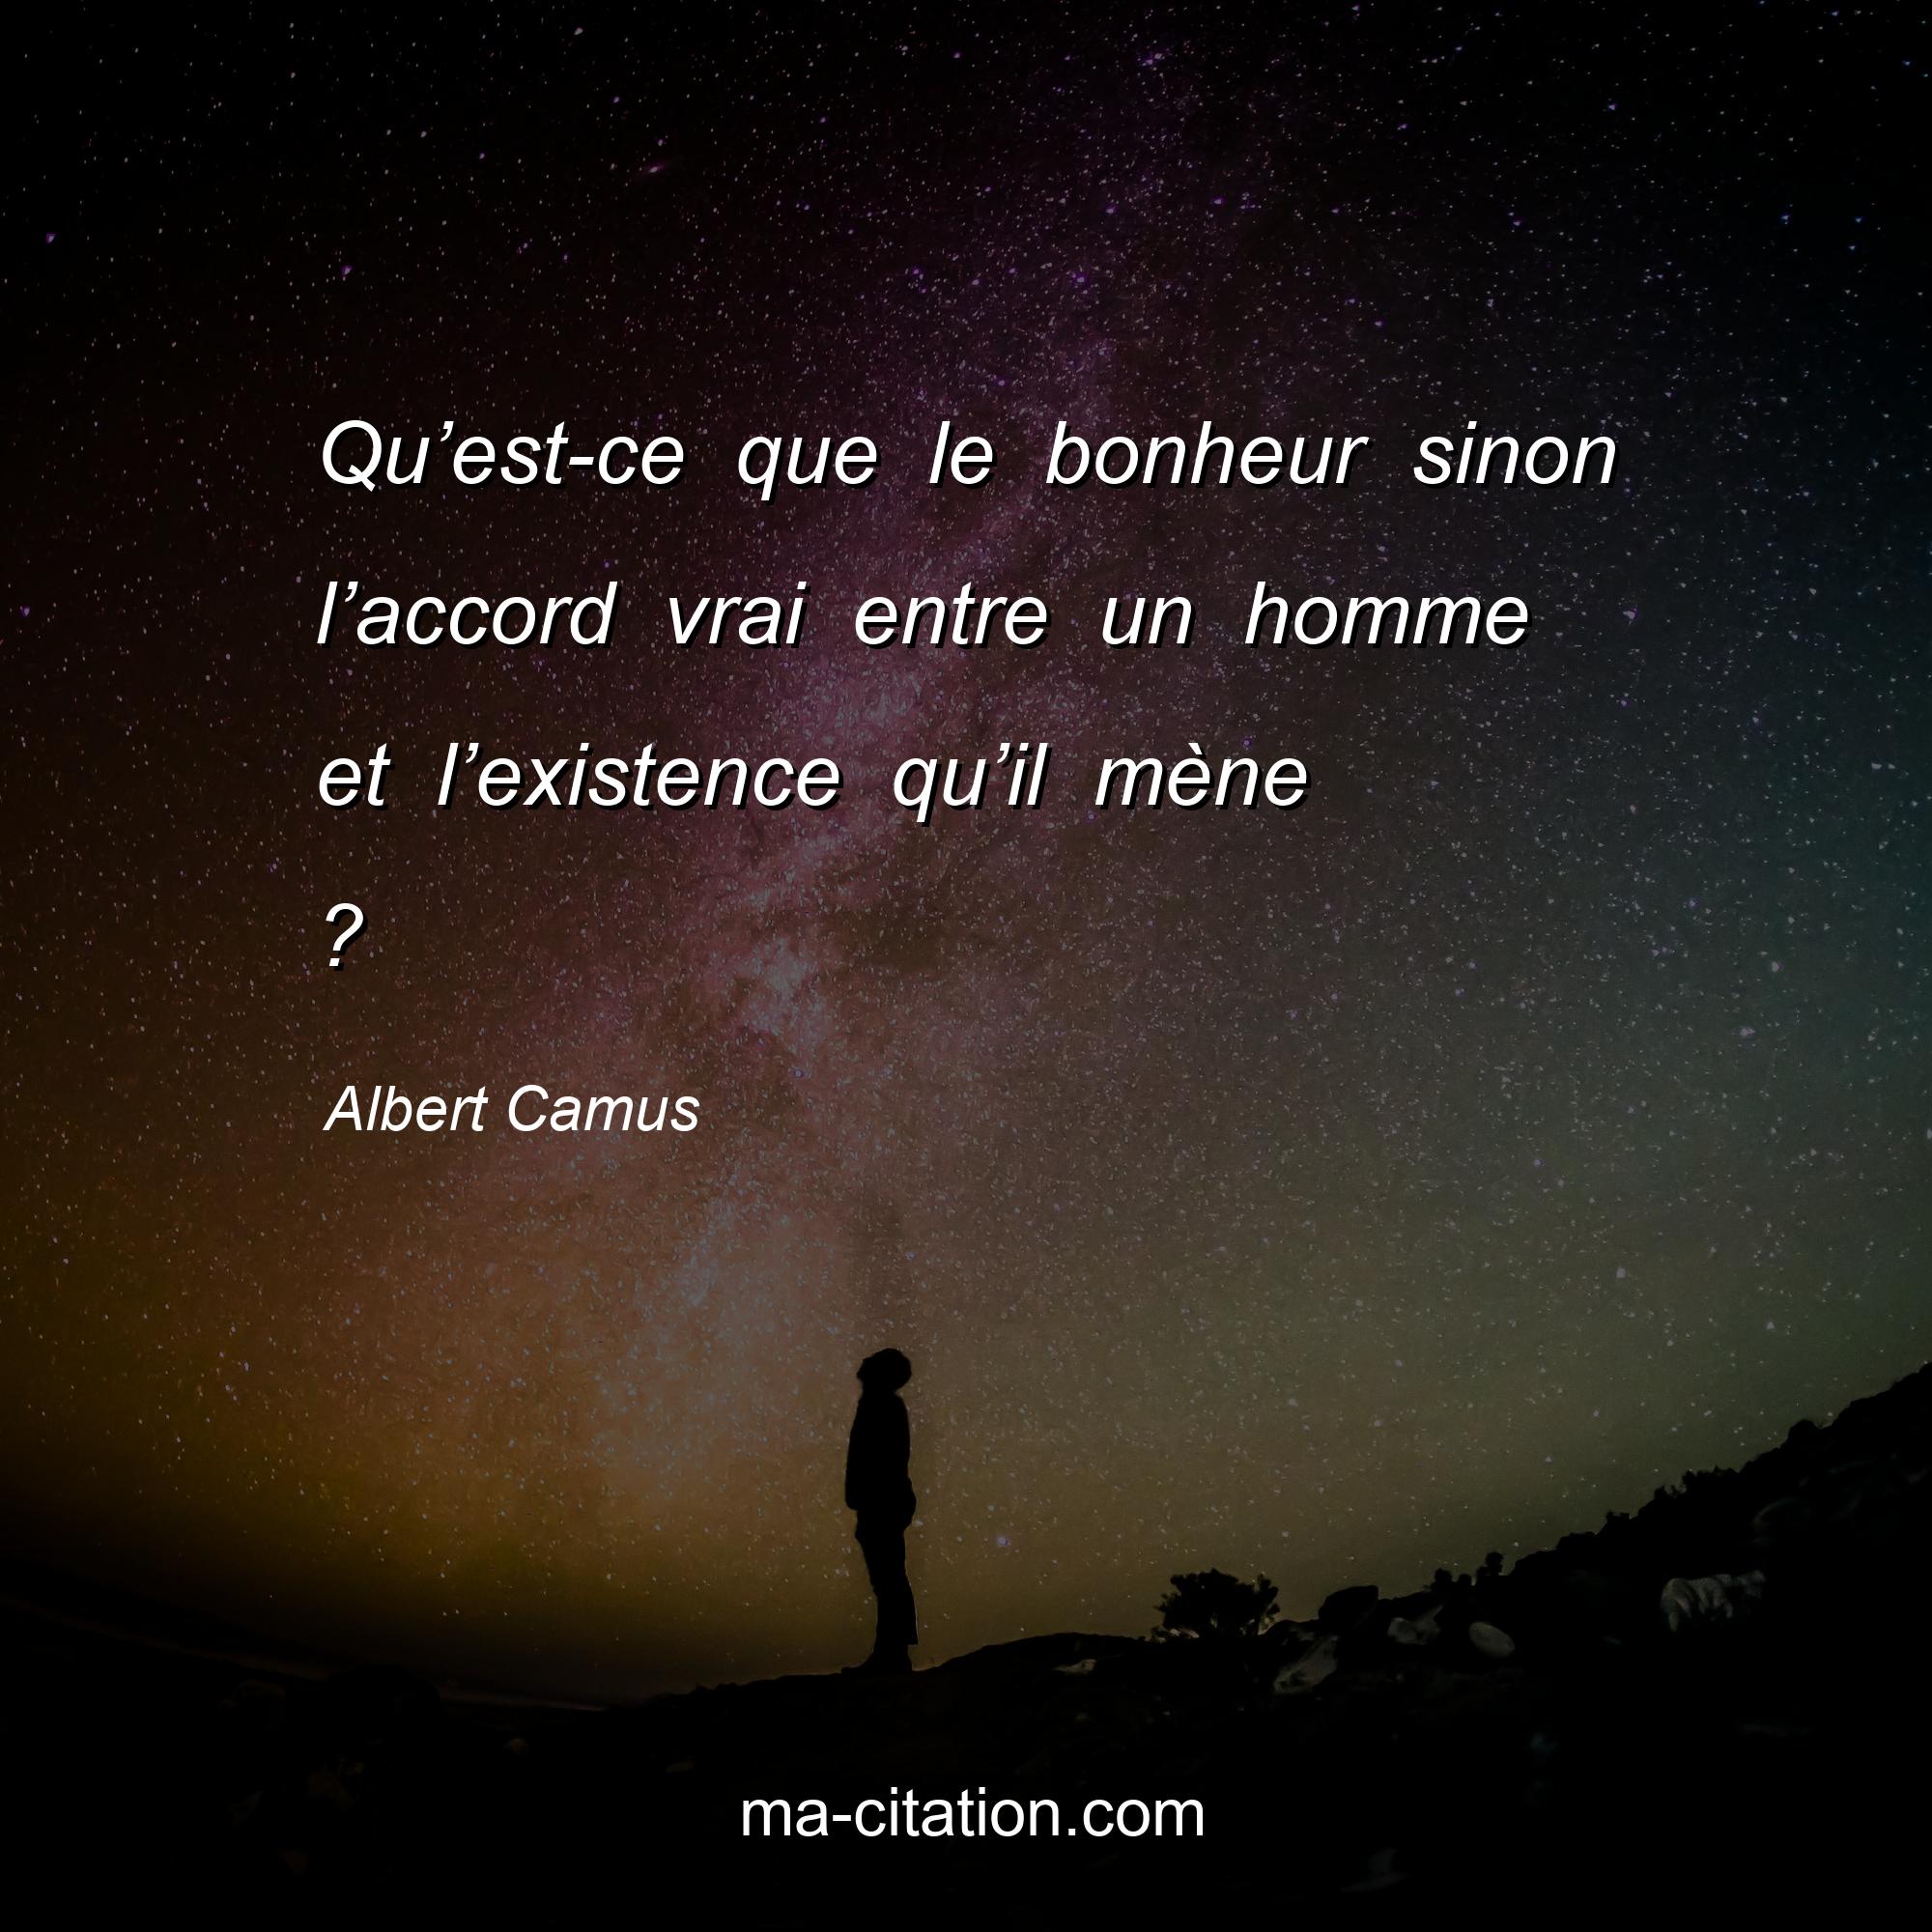 Albert Camus : Qu’est-ce que le bonheur sinon l’accord vrai entre un homme et l’existence qu’il mène ?